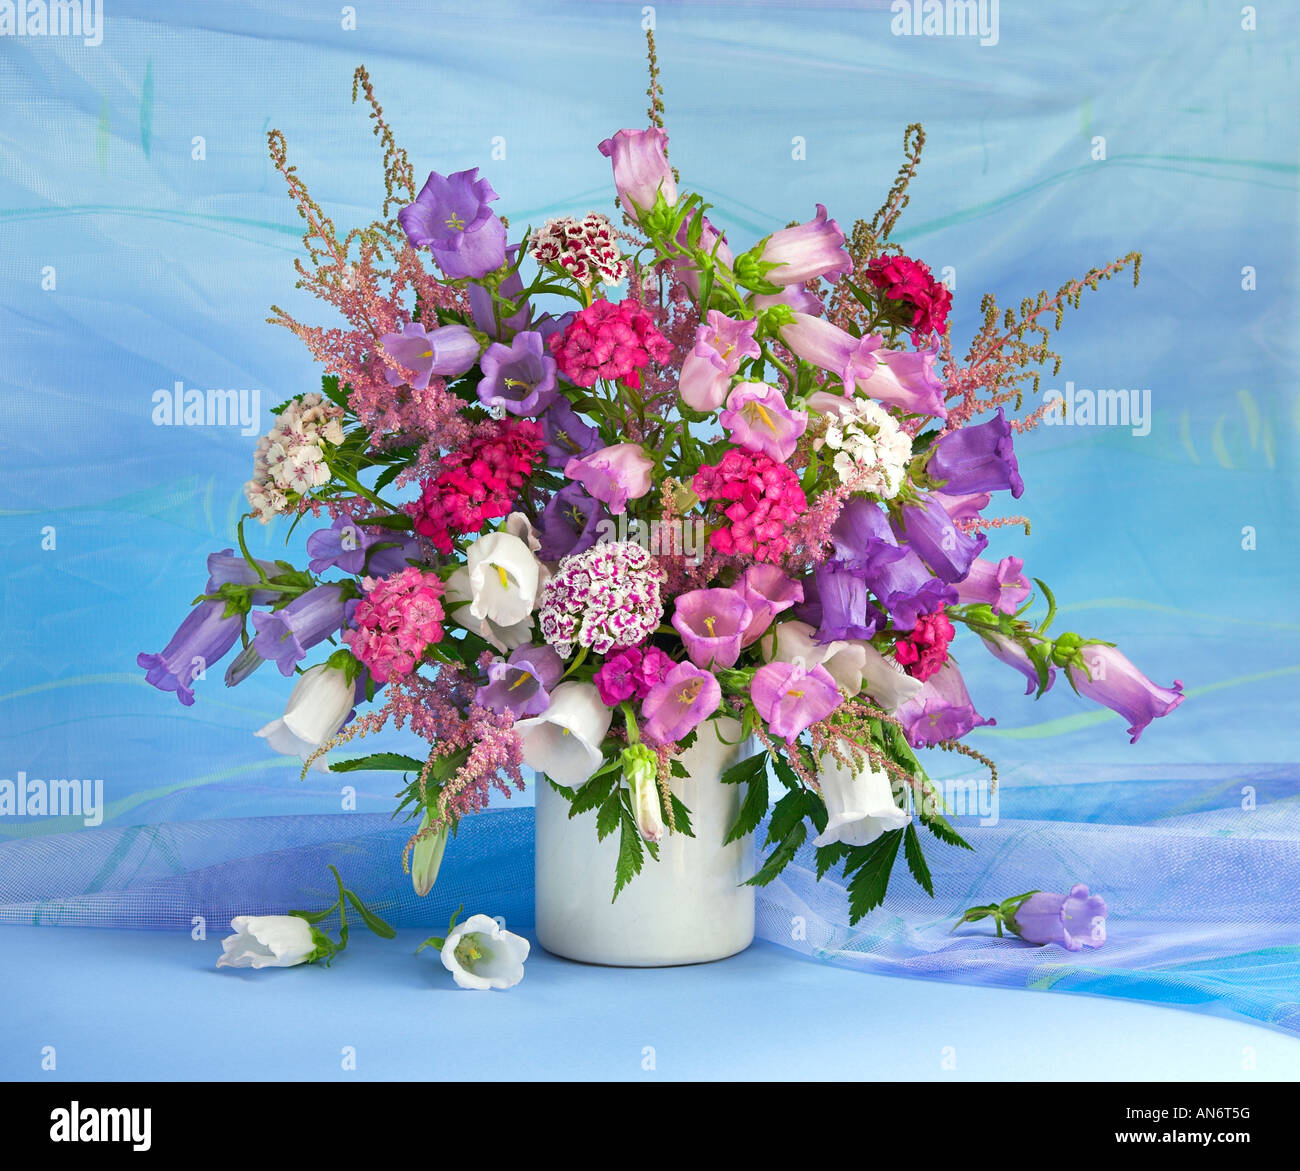 Studio arrangiert bunten Strauß Strauß blühender Frühling Blumen auf einem hellen Hintergrund Stockfoto